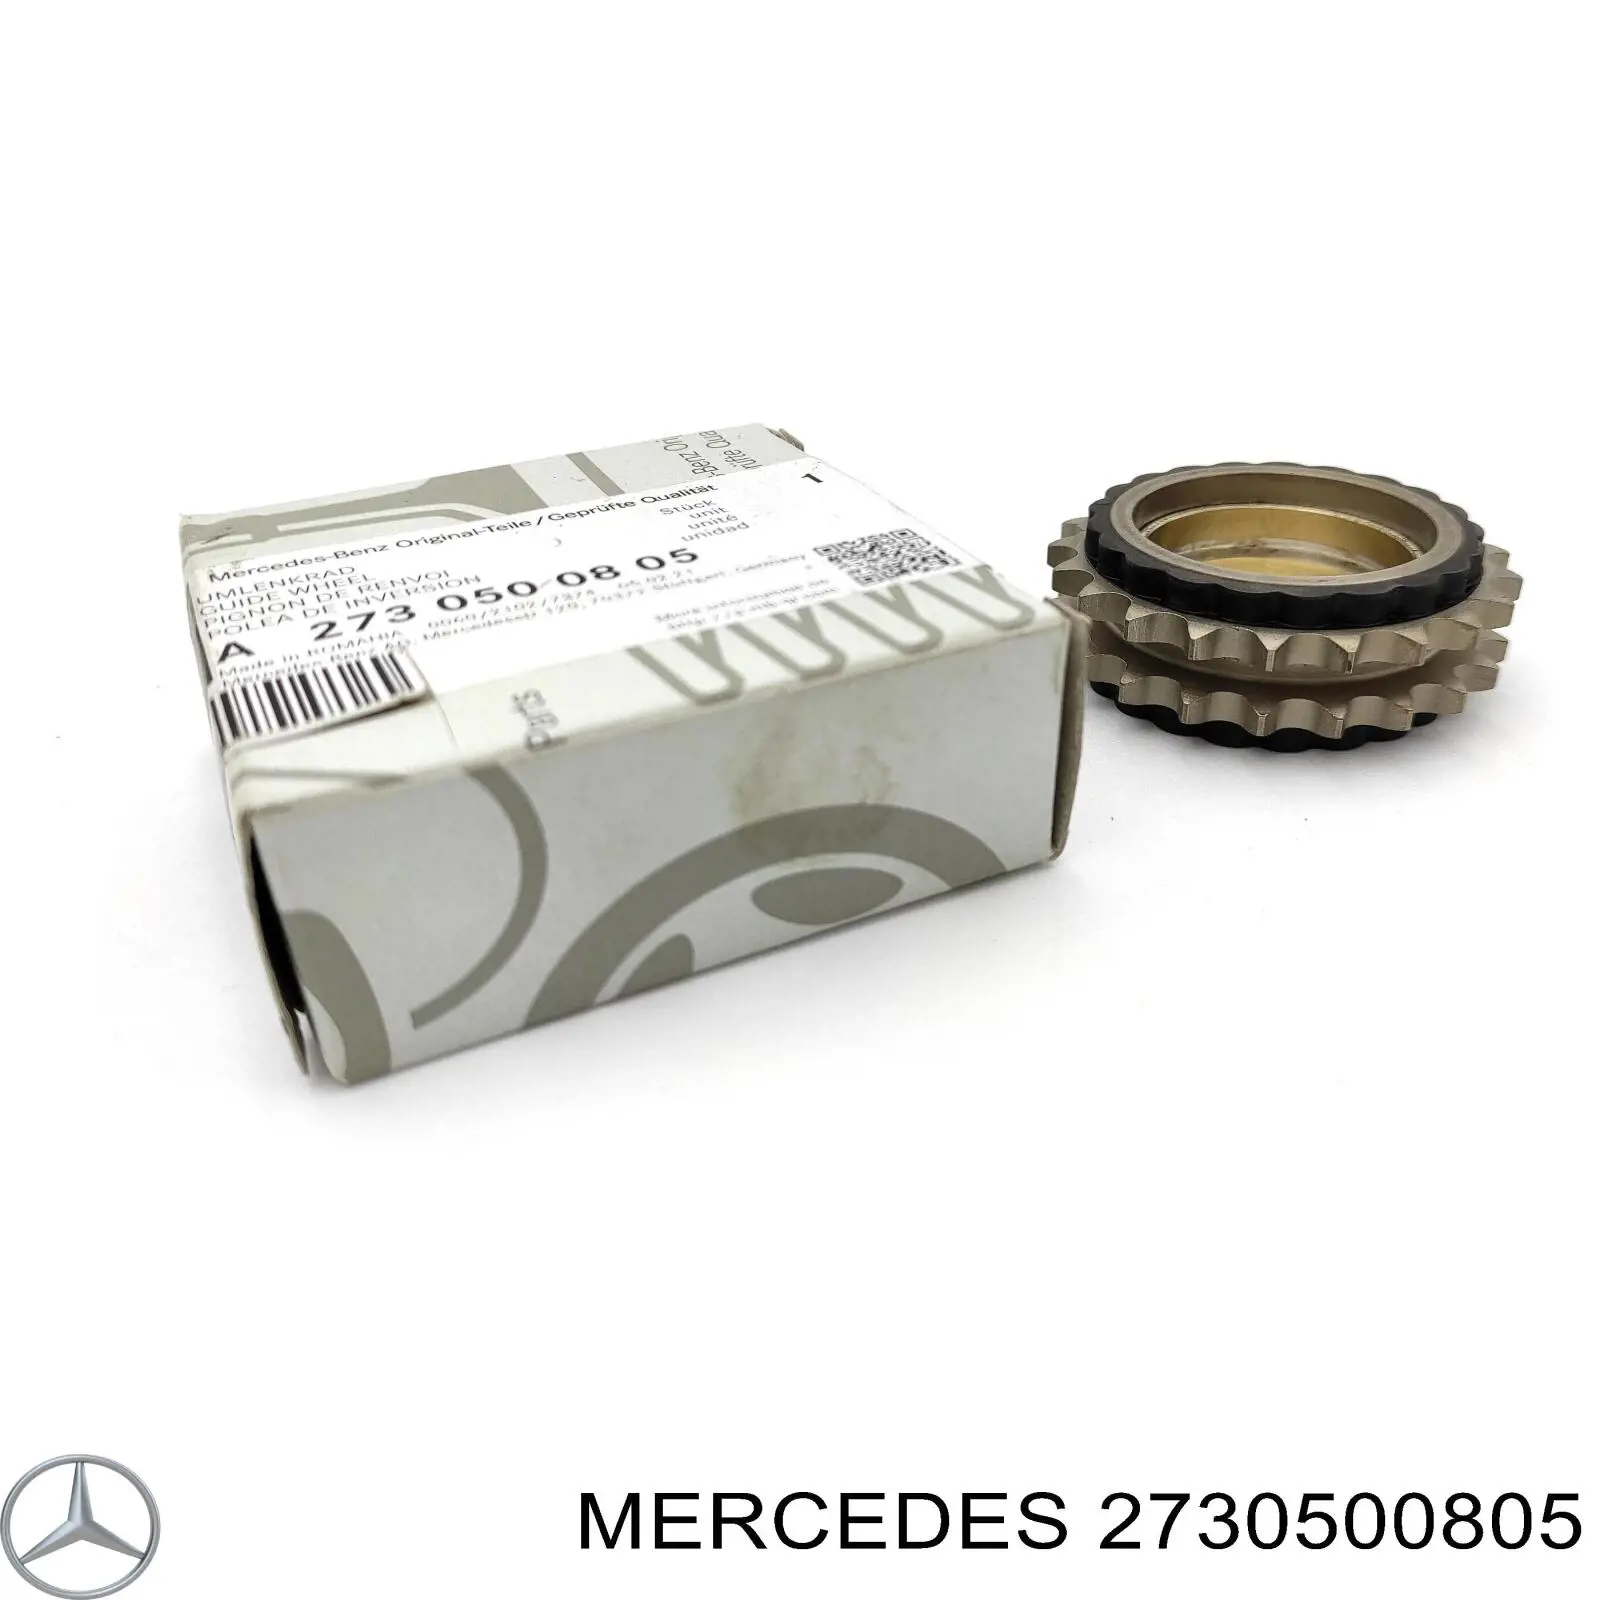 A2730500605 Mercedes шестерня промежуточного вала двигателя